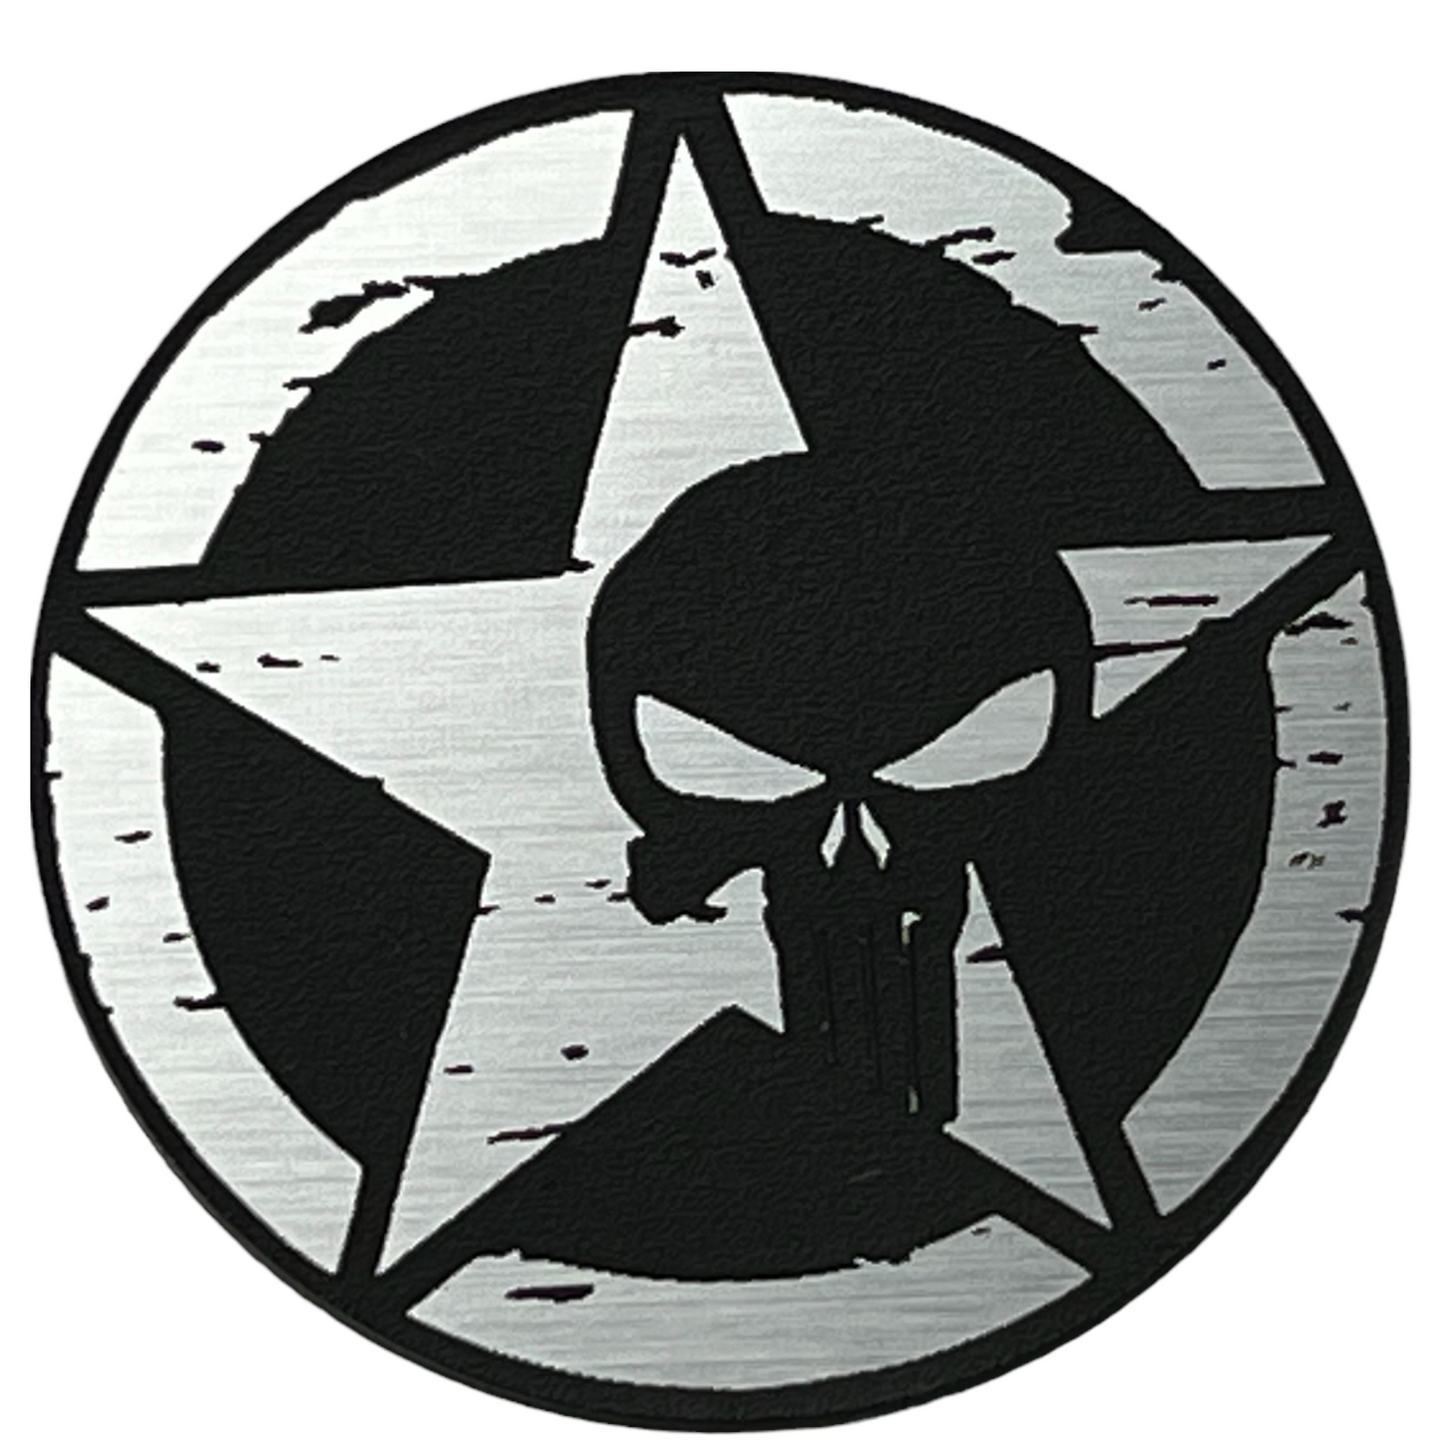 One (1) Punisher Rated Fender Badges fits JEEP WRANGLER YJ JL JK TJ CJ emblems